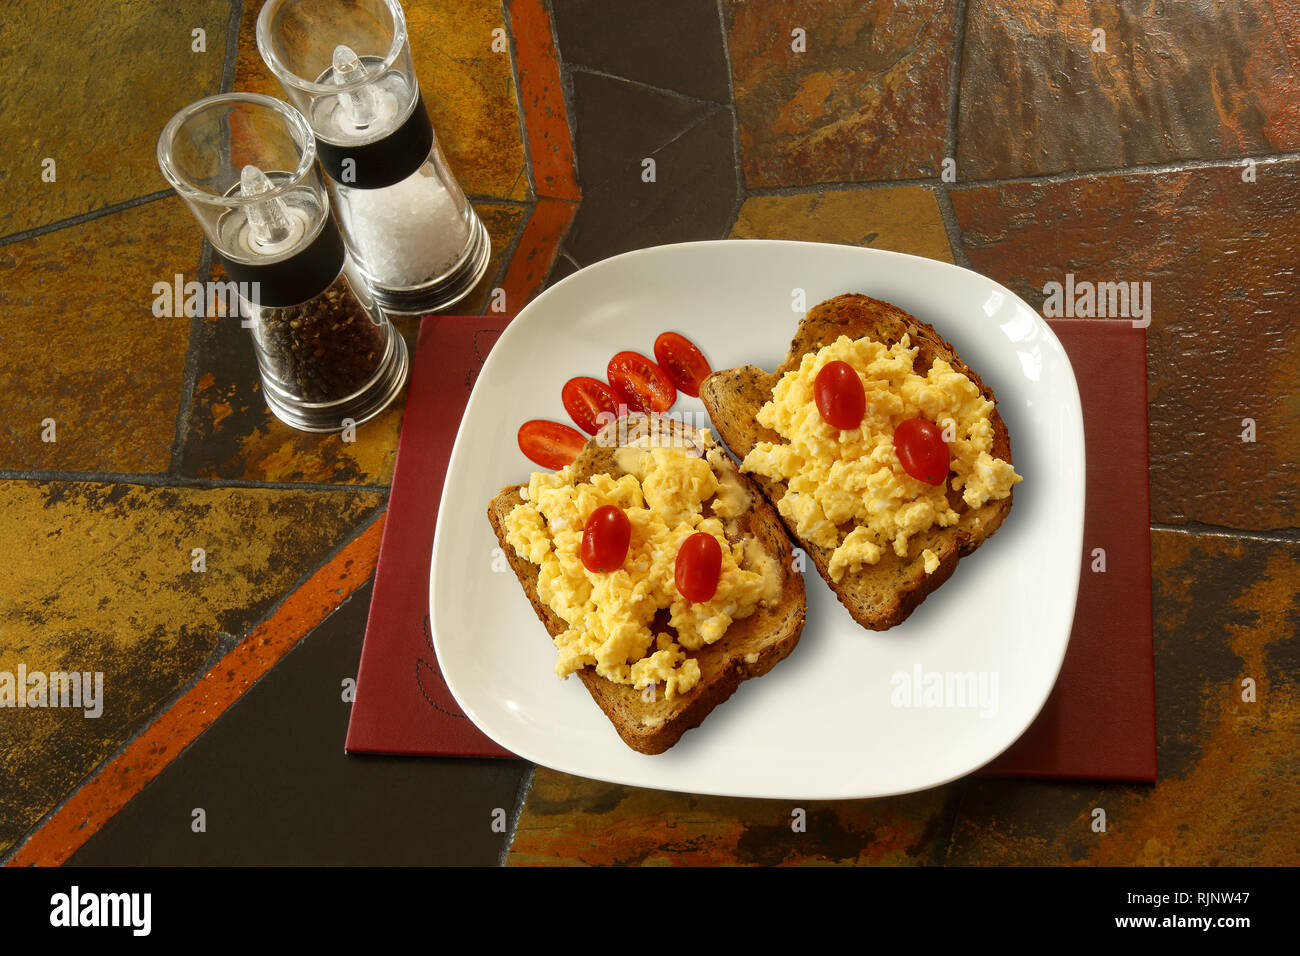 Rühreier auf Toast mit Pflaumentomaten. Hintergrund ist eine geflieste Tischplatte und zeigt Salz- und Pfeffermühlen Stockfoto